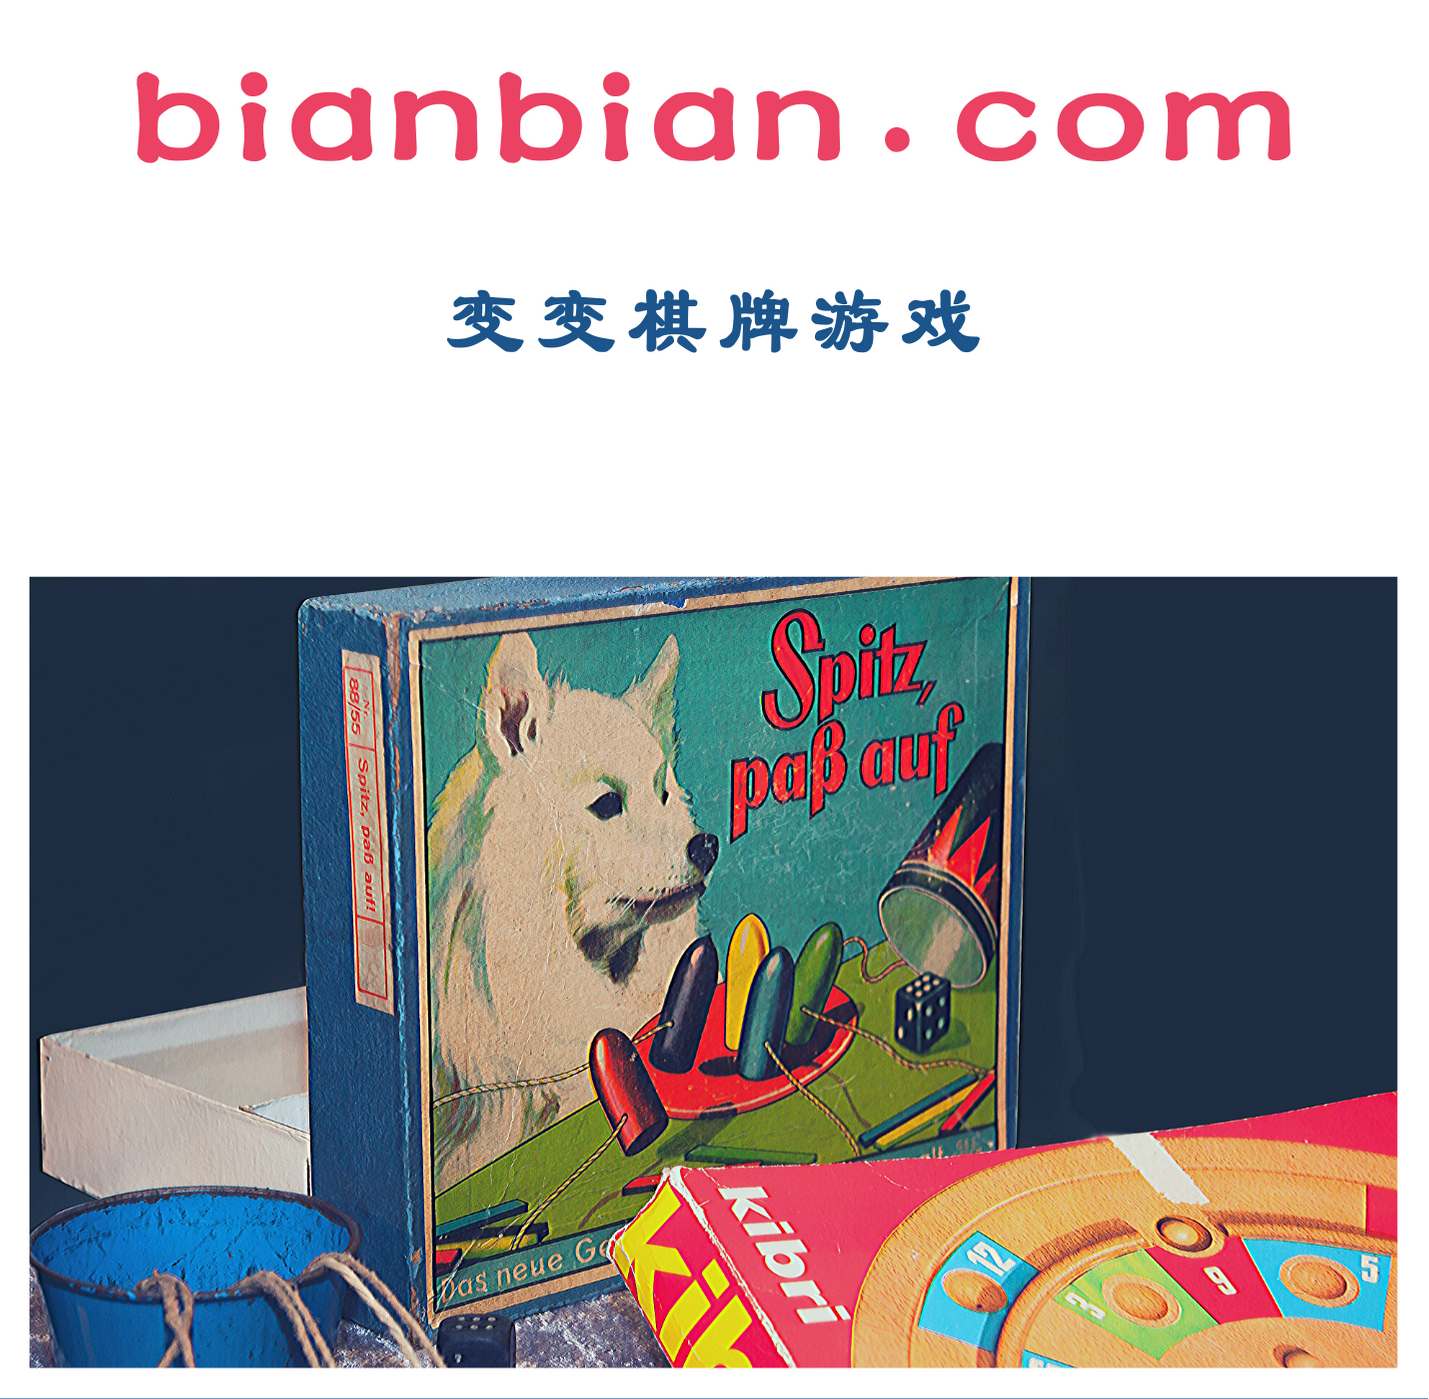 bianbian.com